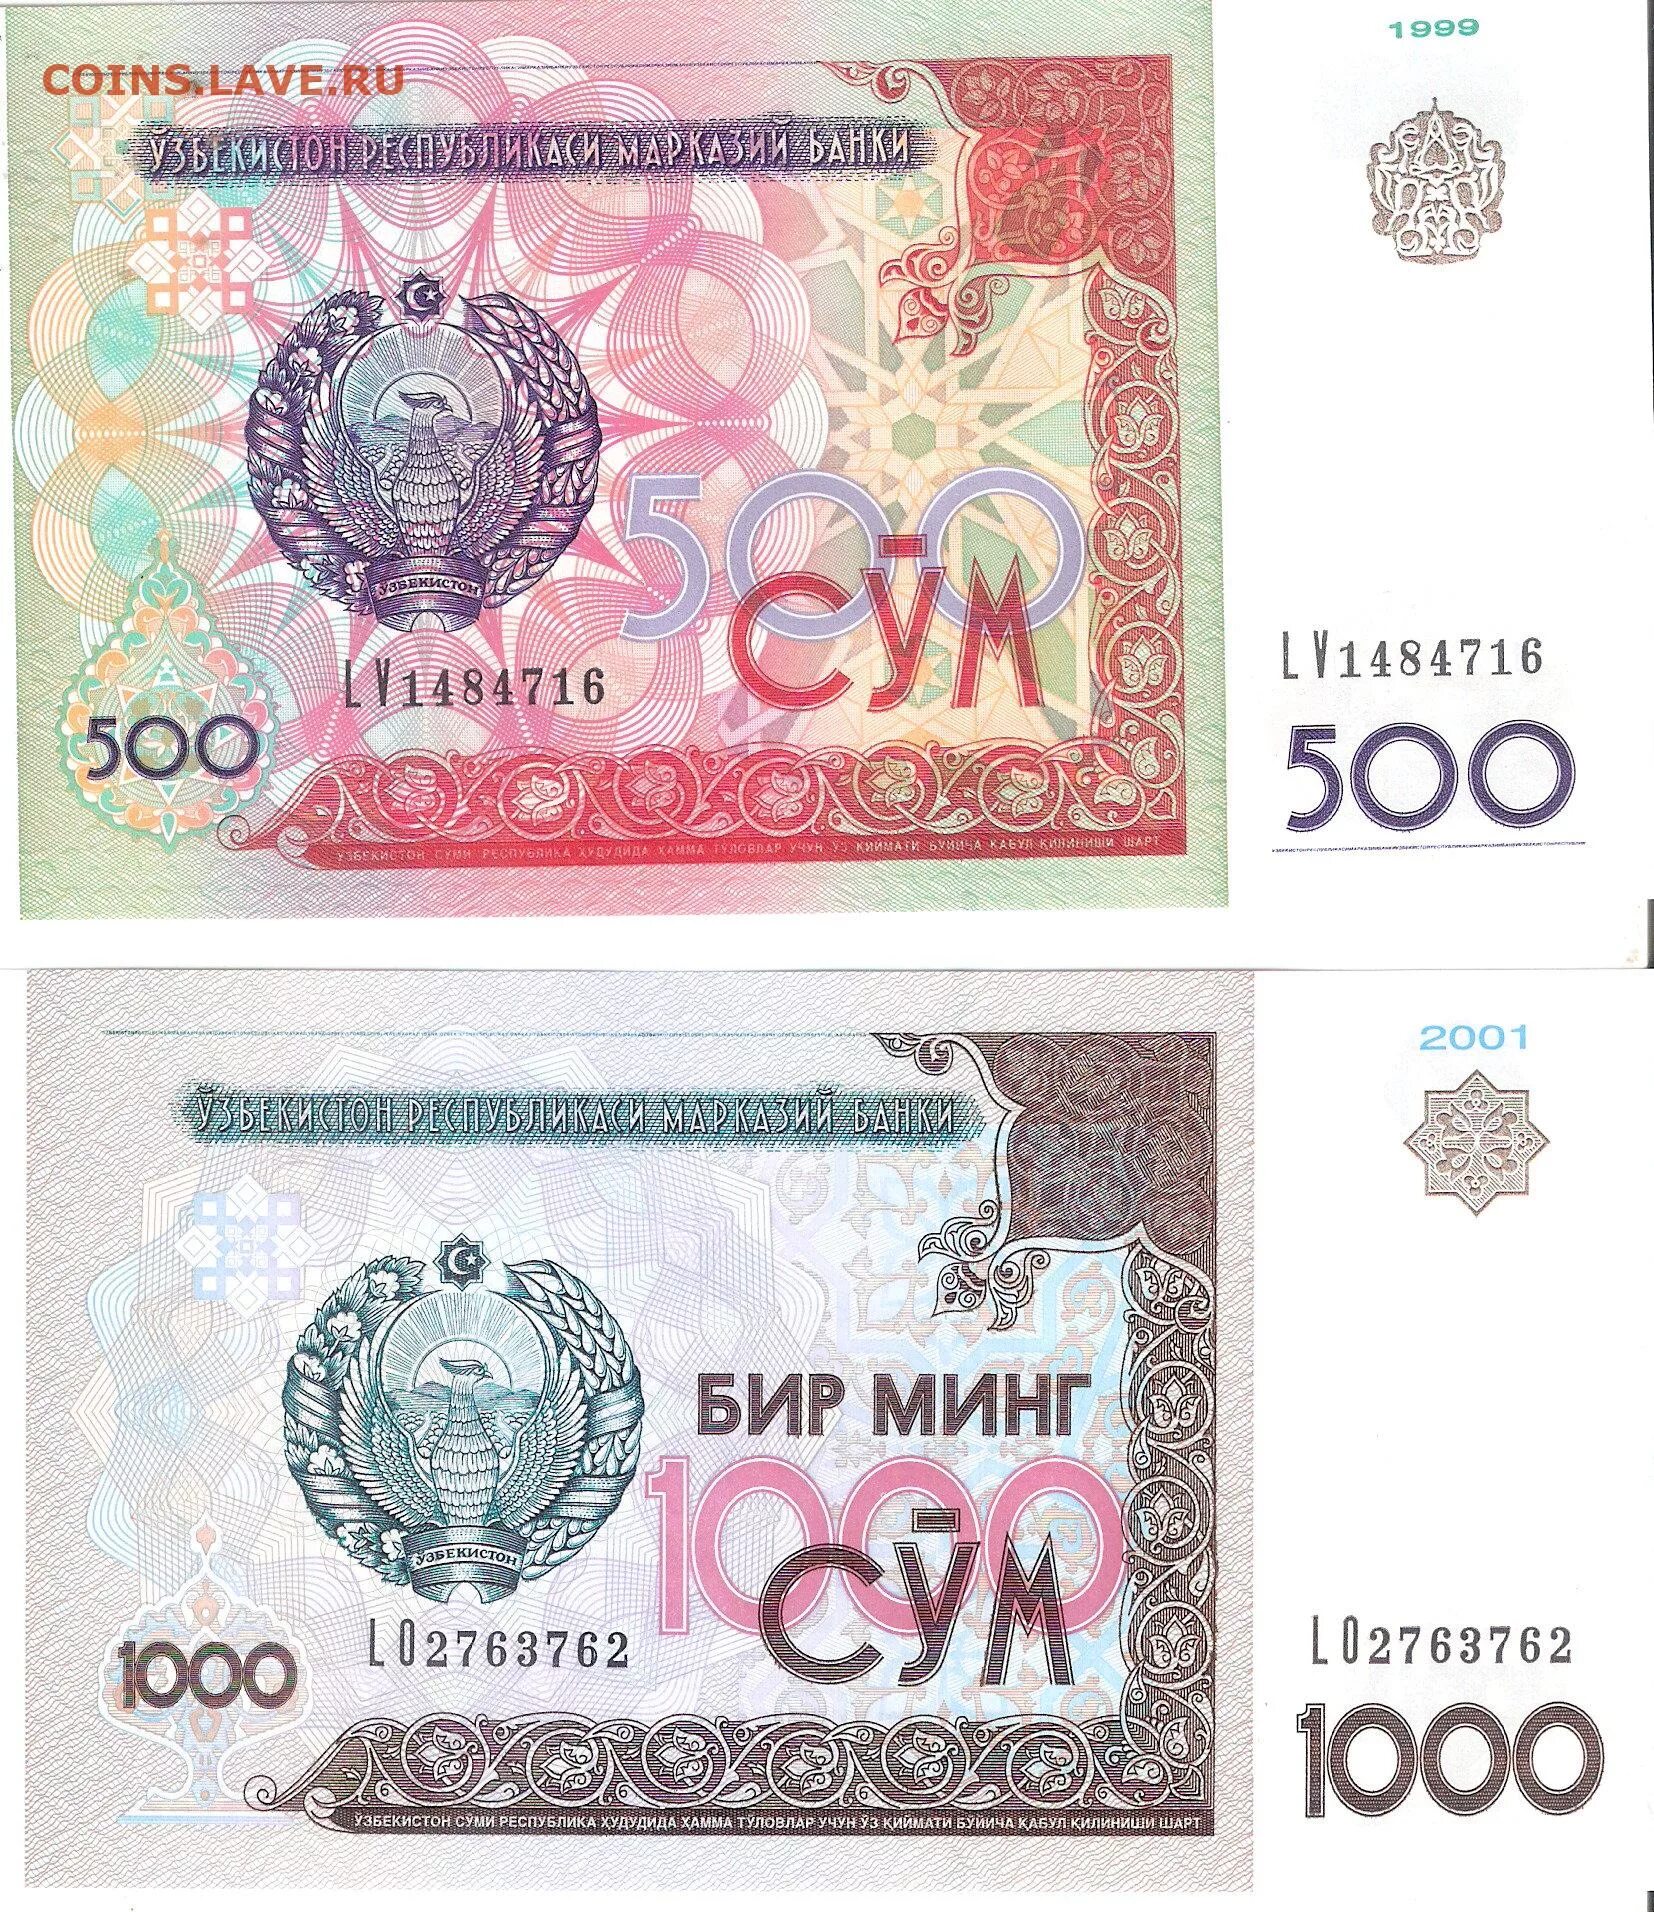 Сум на русские. 500 Сўм. Узбекистан 500 сом 1999. Банкнота 500 сум Узбекистан. Узбекистан 1000 сум 2001.